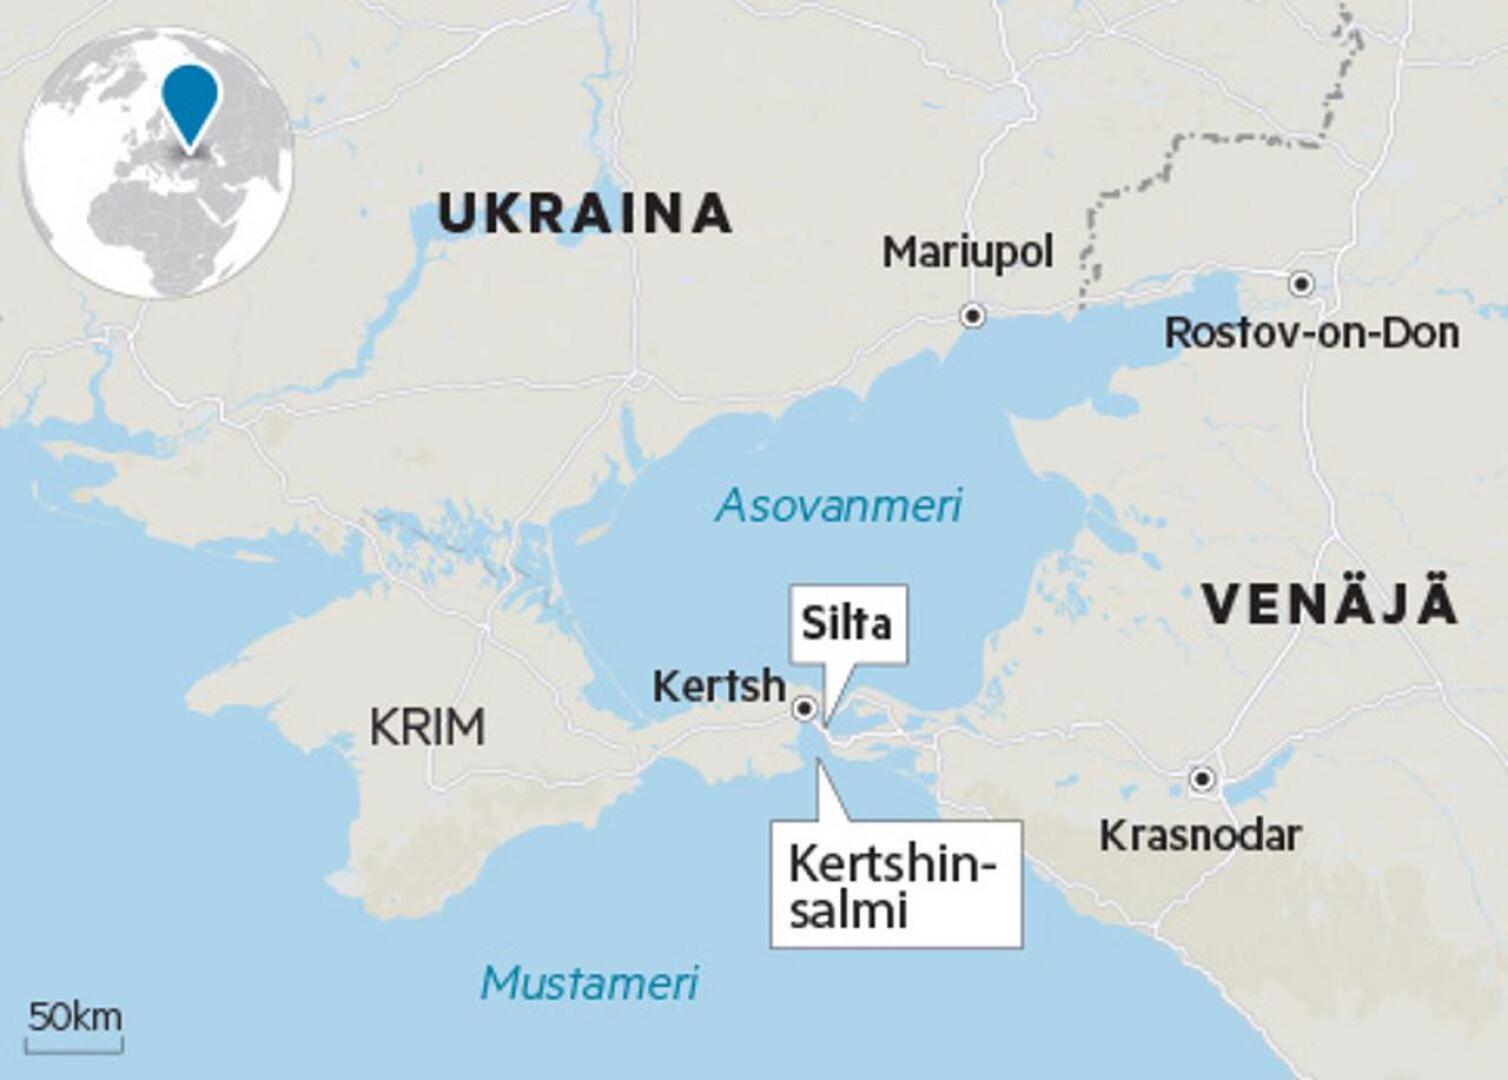 Kertshinsalmi on ainut reitti Asovanmeren satamakaupungeista Mustallemerelle. Venäjä on aloittanut viime kuukausina tarkastamaan salmea pitkin kulkevaa rahtiliikennettä. Se koituu Ukrainan mukaan kalliiksi liikenteelle.